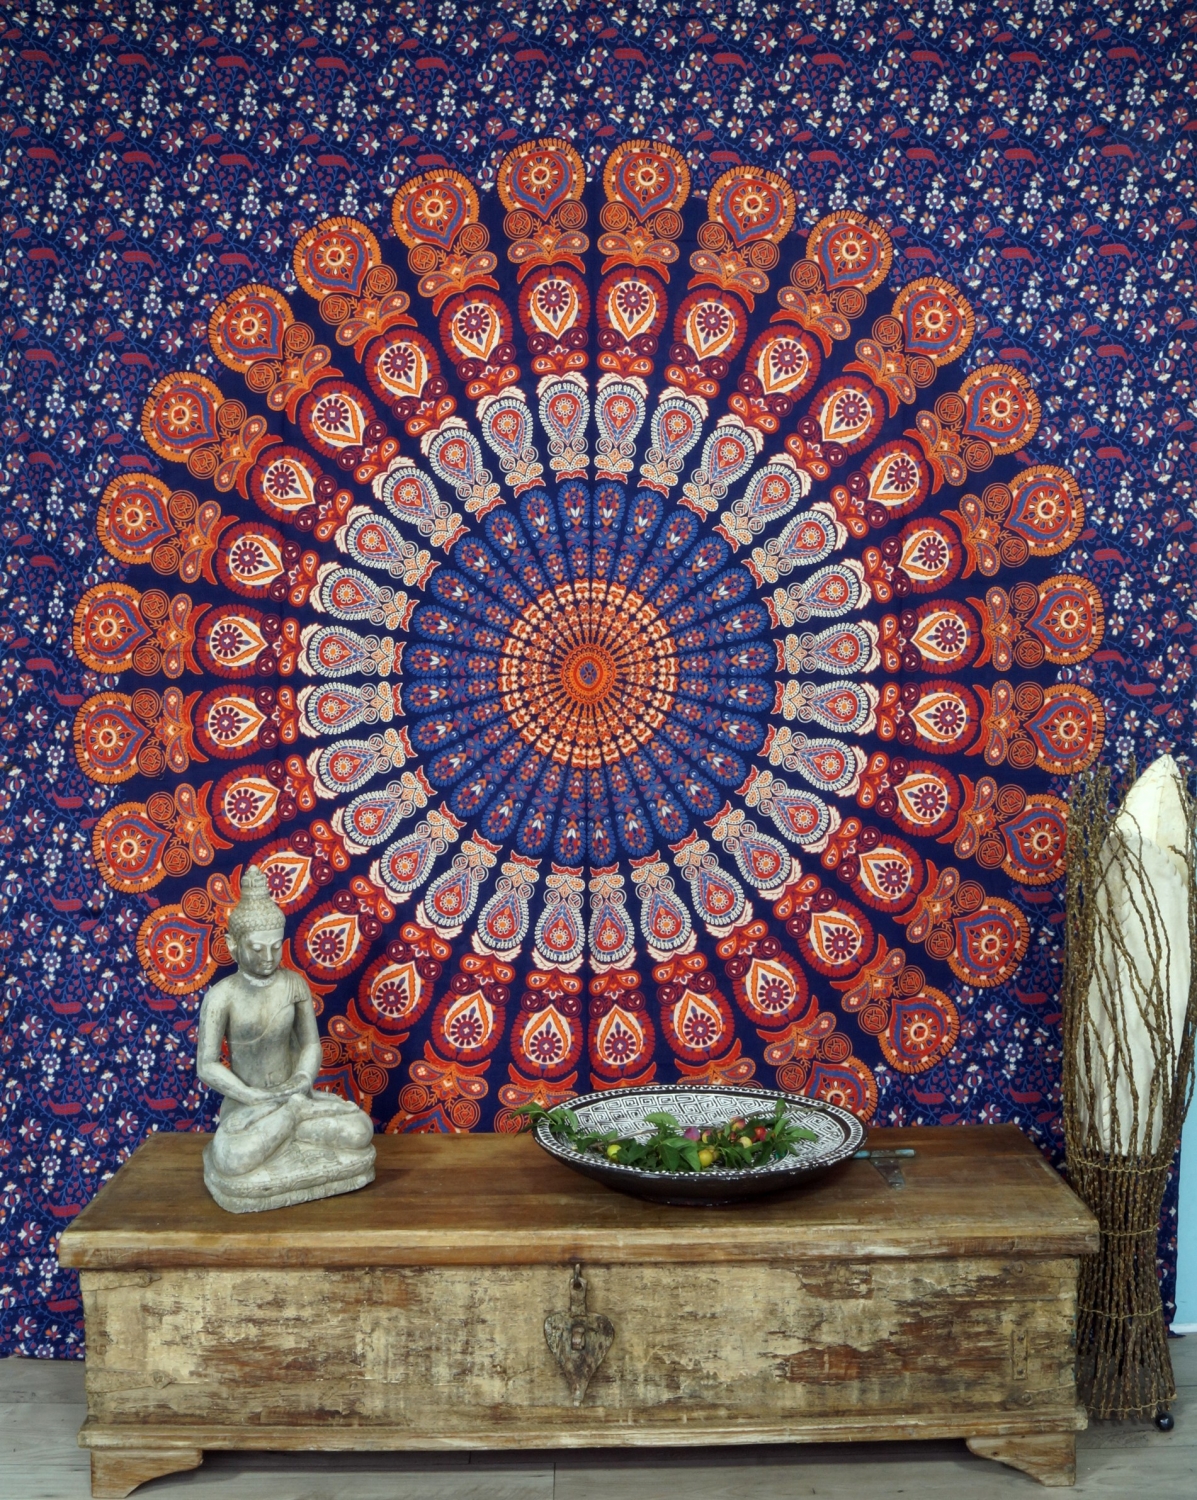 OM Mandala Wandbehang Tagesdecke Dekotuch Schwarz Weiß Bedcover 2,00x1,40cm OM W 